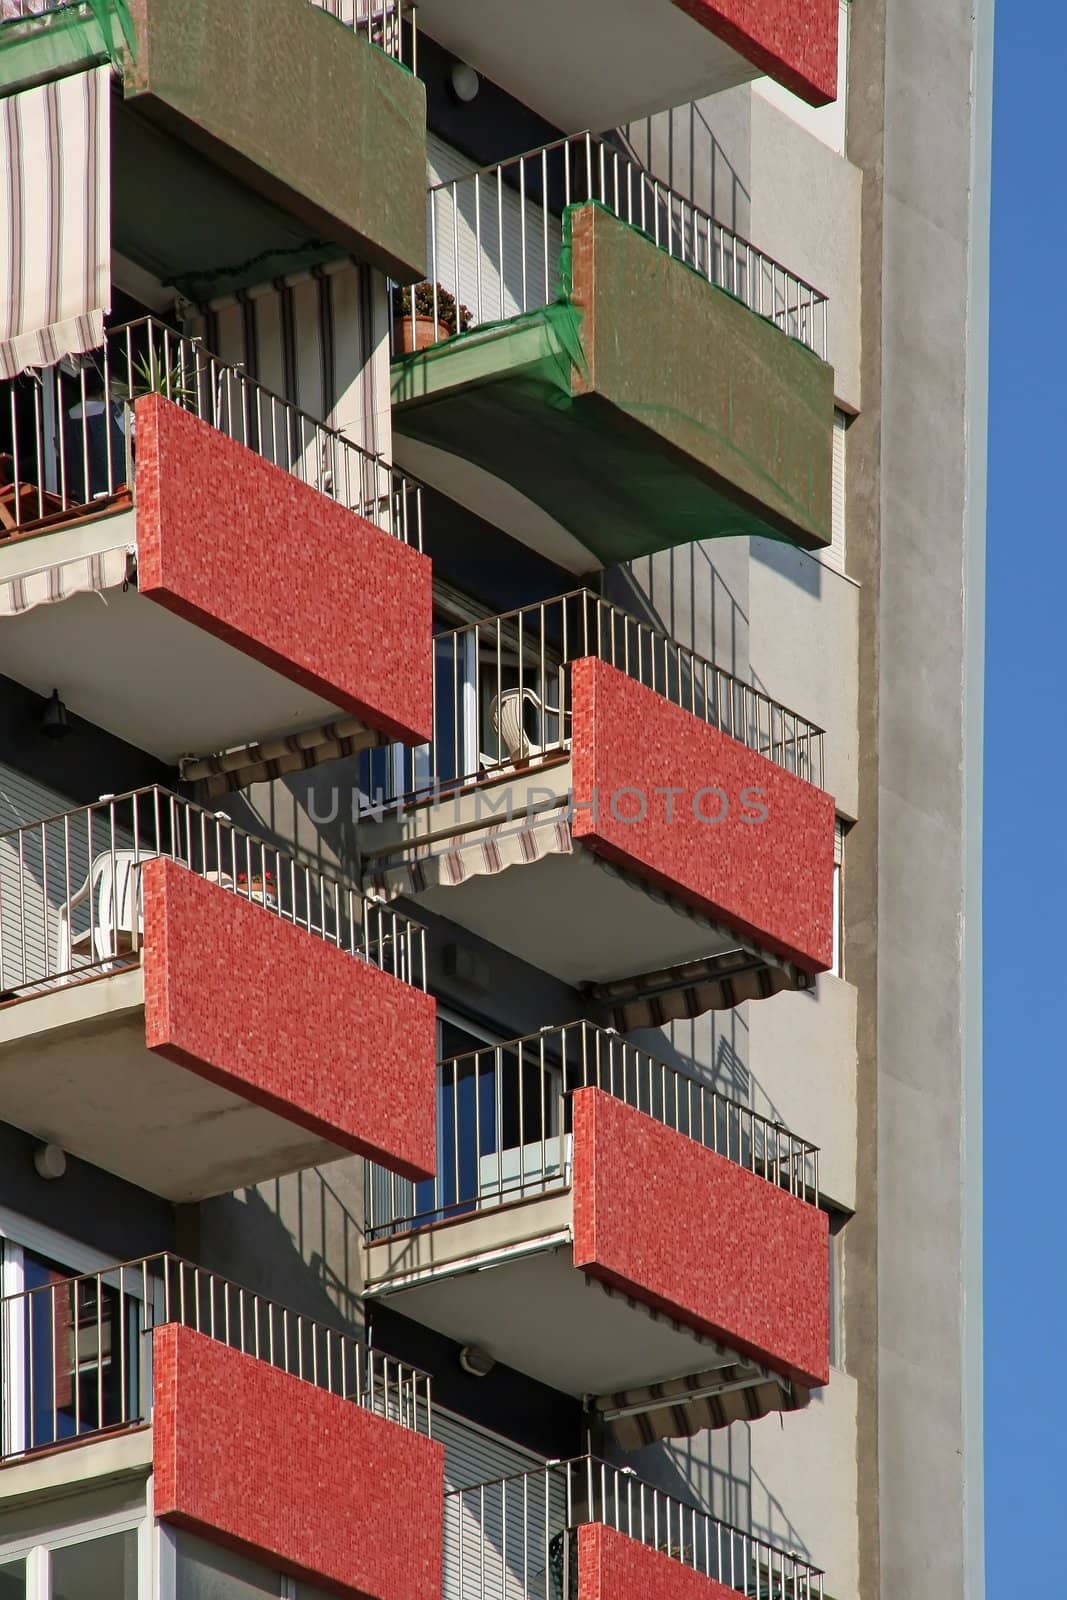 building and balconies by neko92vl